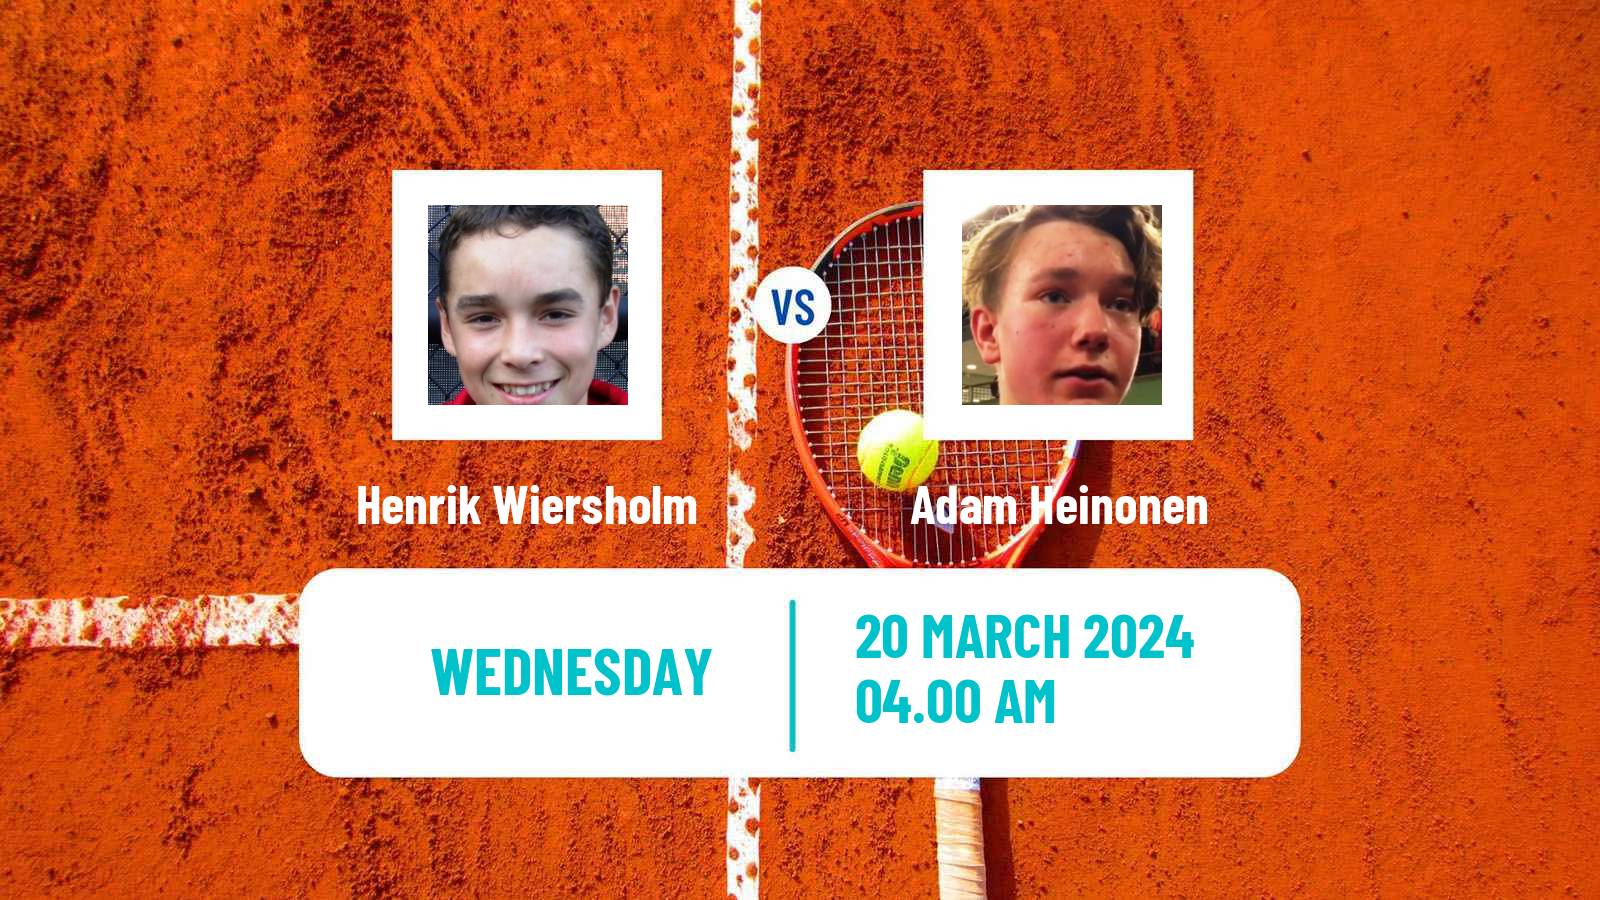 Tennis ITF M15 Heraklion 3 Men Henrik Wiersholm - Adam Heinonen